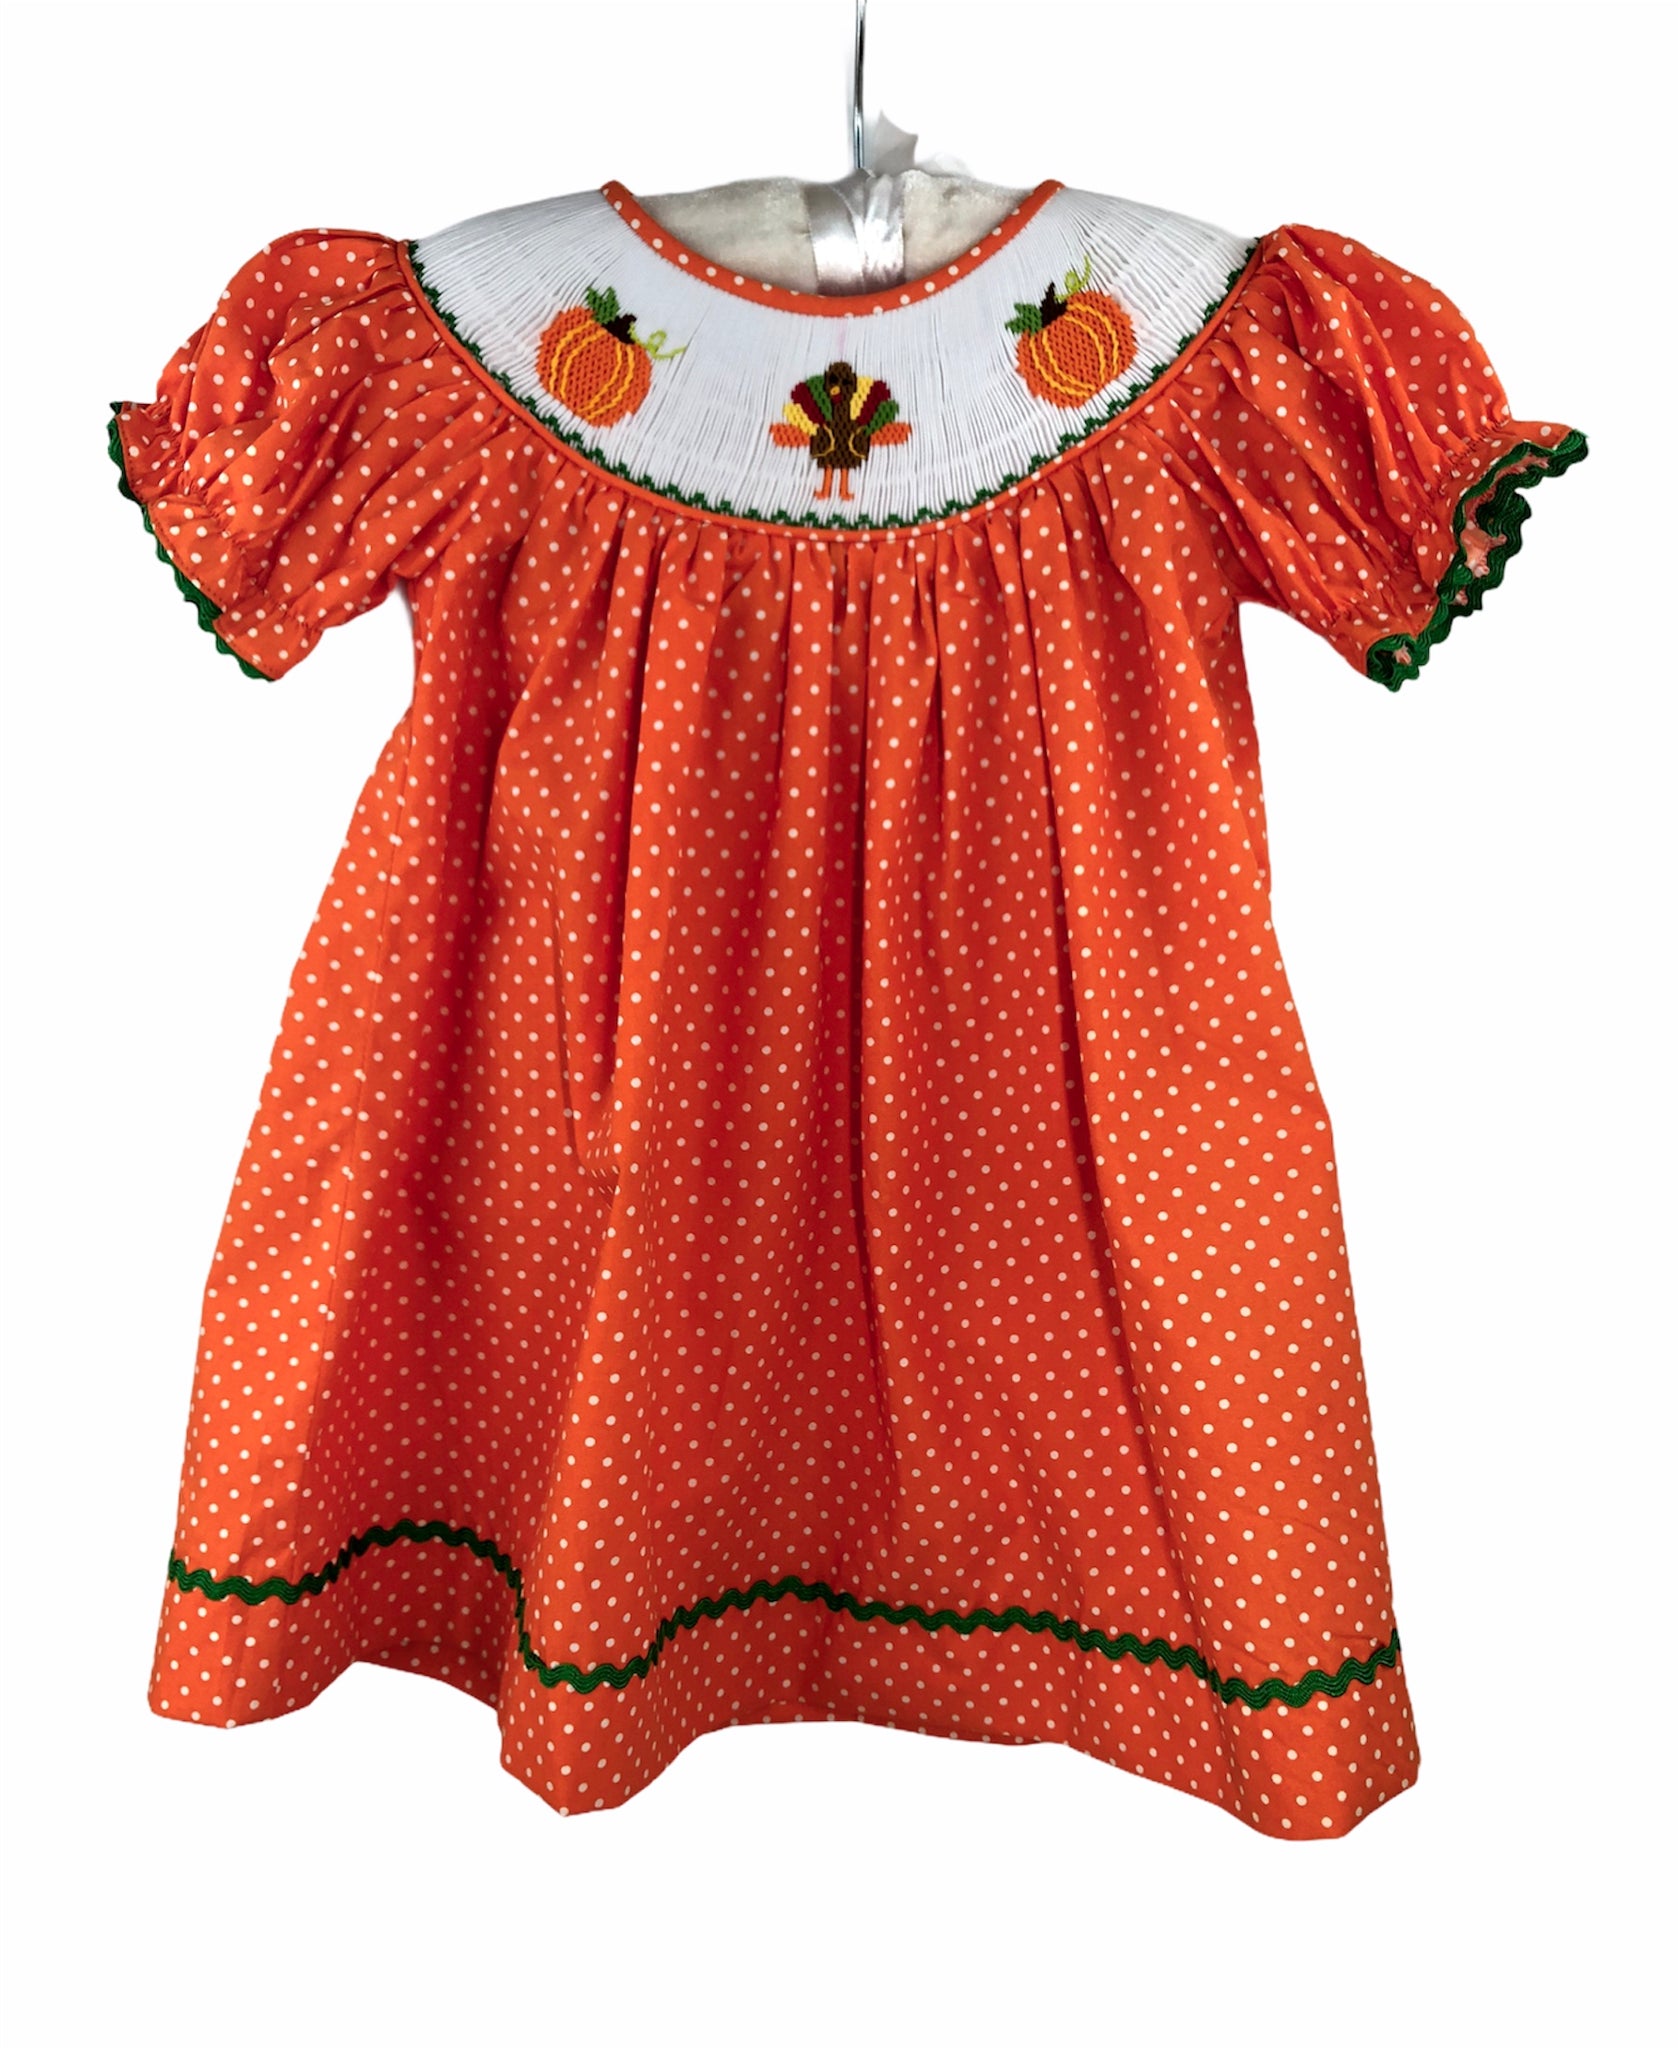 Orange polka dots pumpkins smocked dress